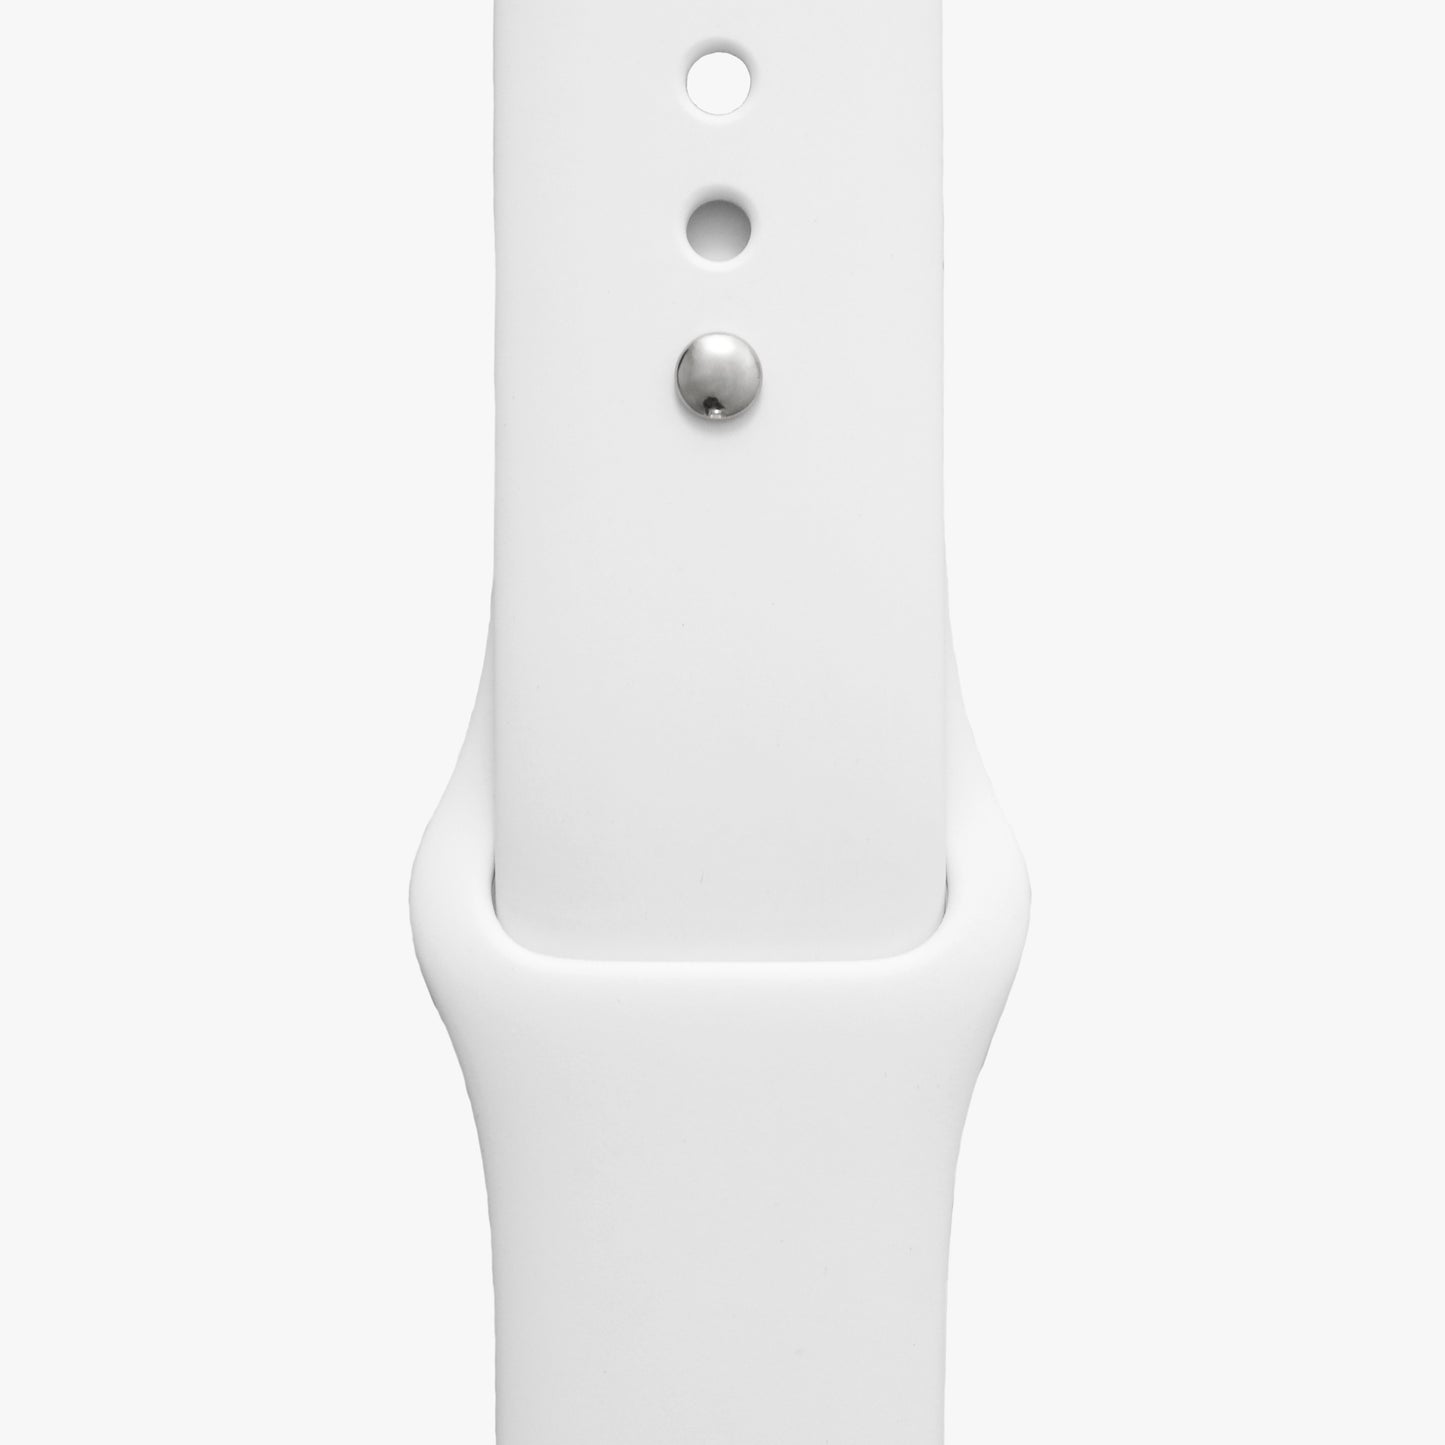  Sportarmband für Apple Watch in weiß - 2 Größen in Länge S/M + M/L 